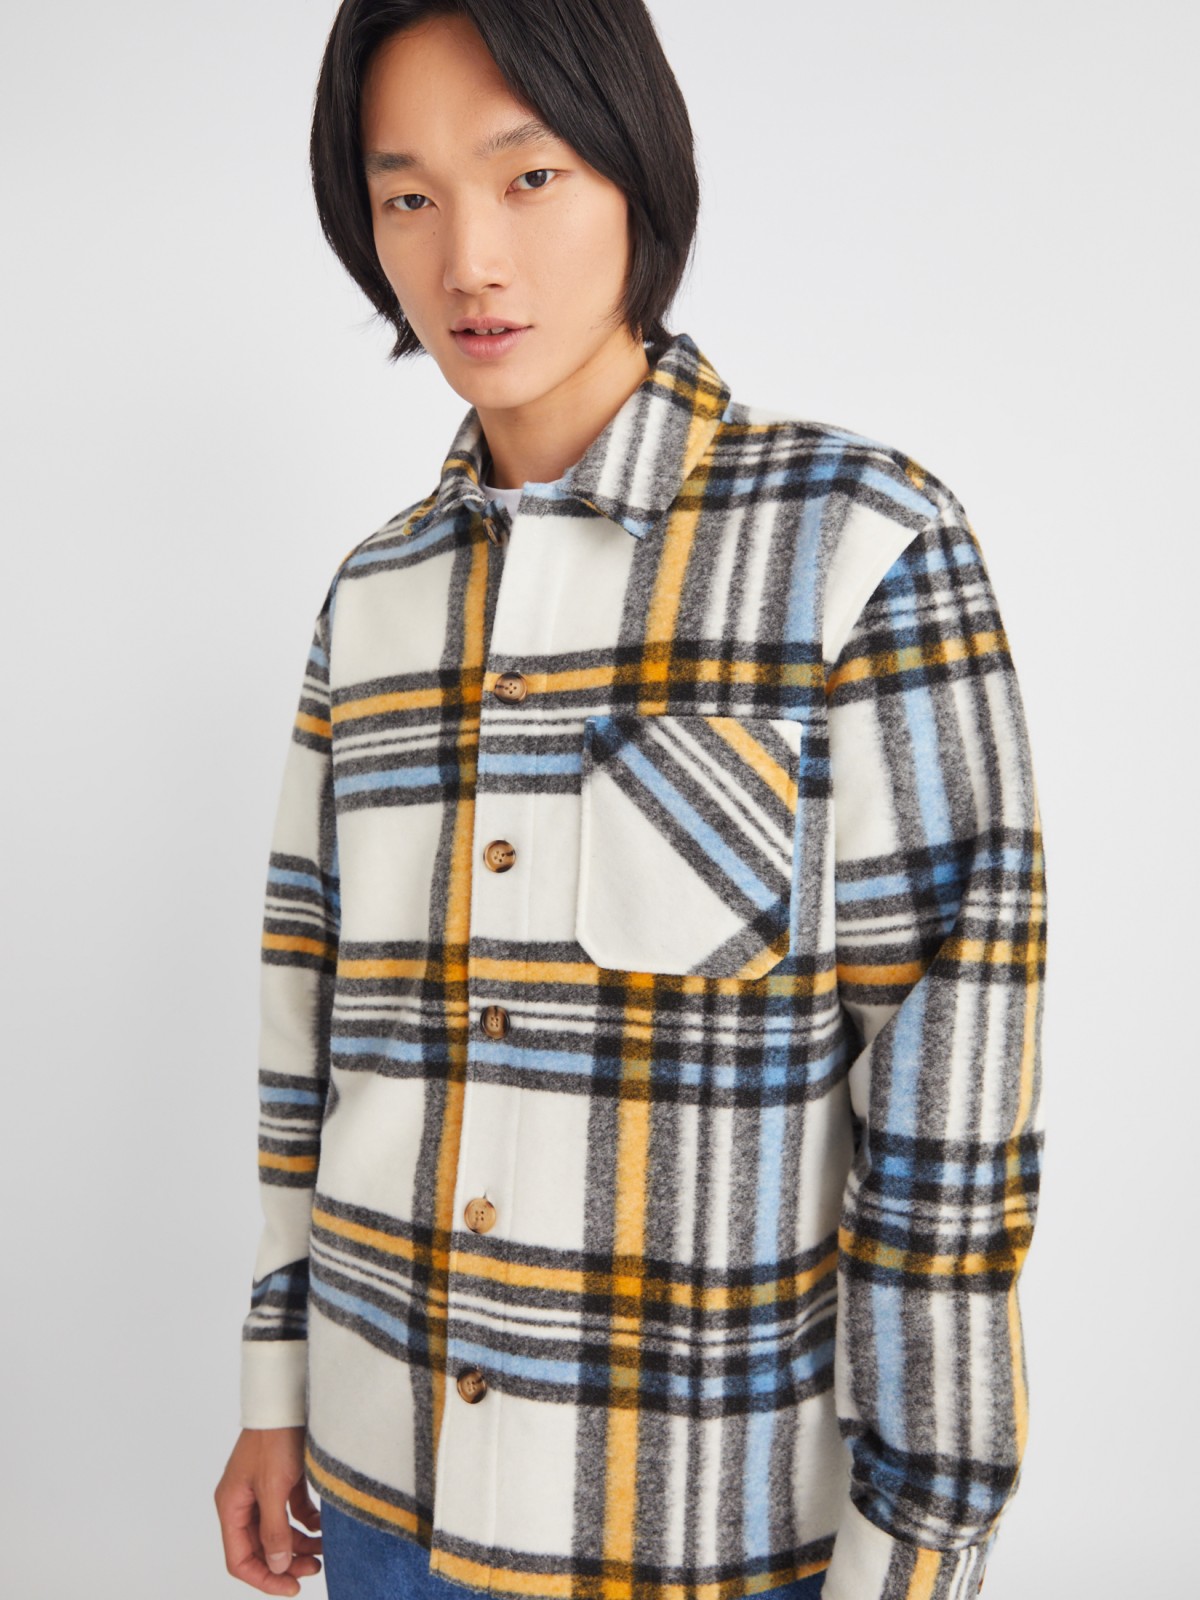 Куртка-рубашка из пальтовой ткани с узором в клетку на пуговицах zolla 013335860074, цвет желтый, размер M - фото 4